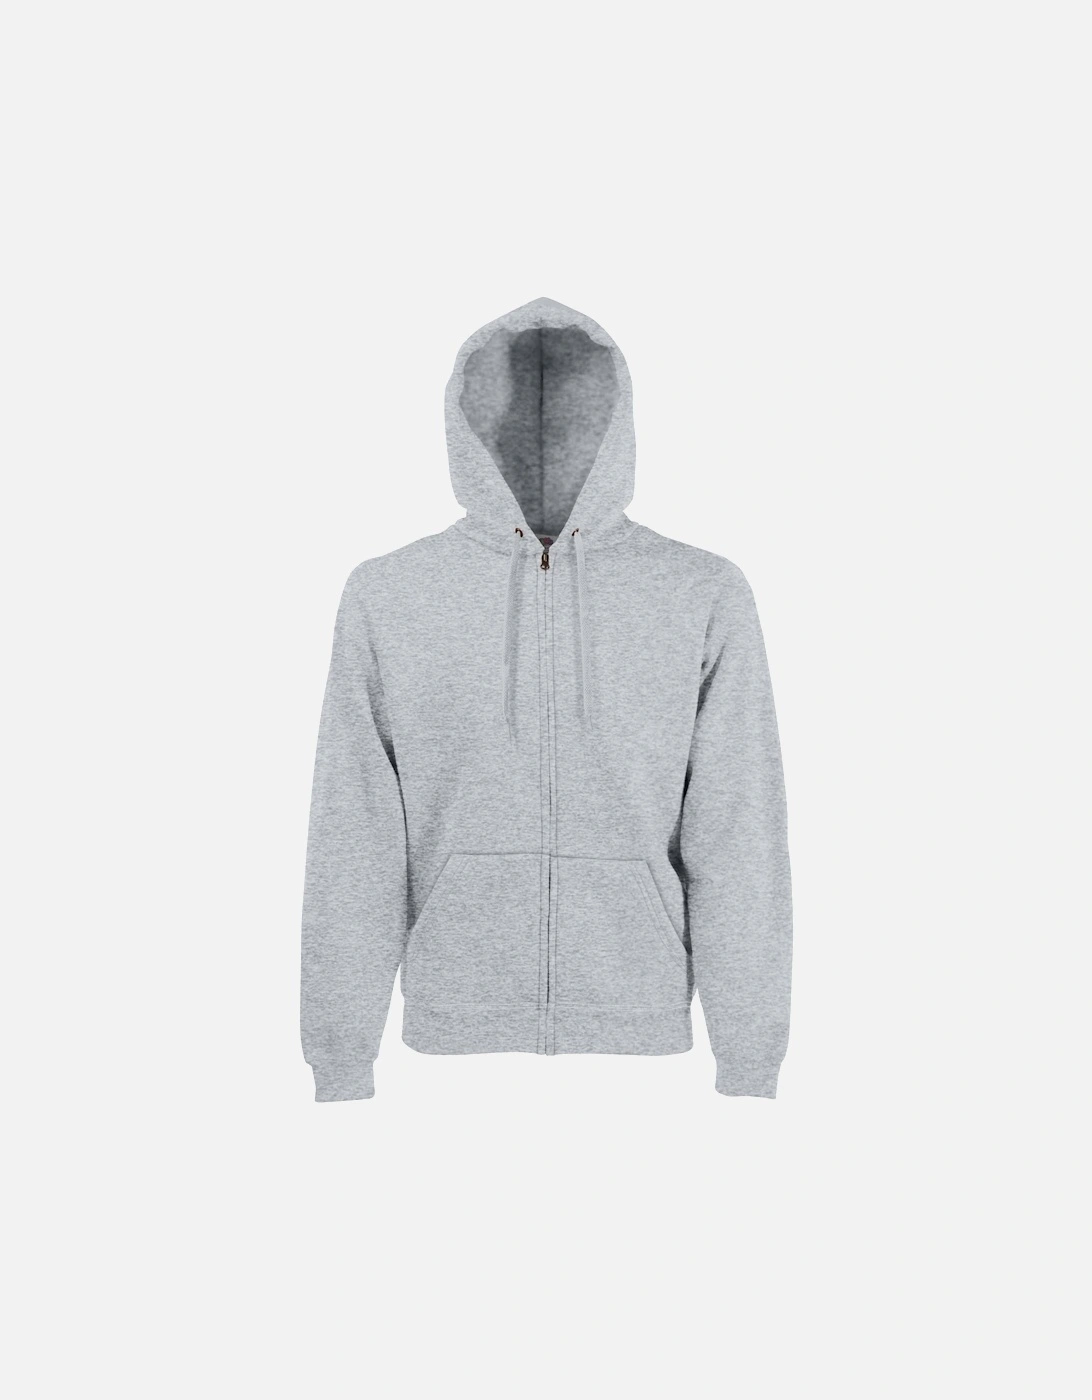 Mens Premium 70/30 Hooded Zip-Up Sweatshirt / Hoodie, 5 of 4